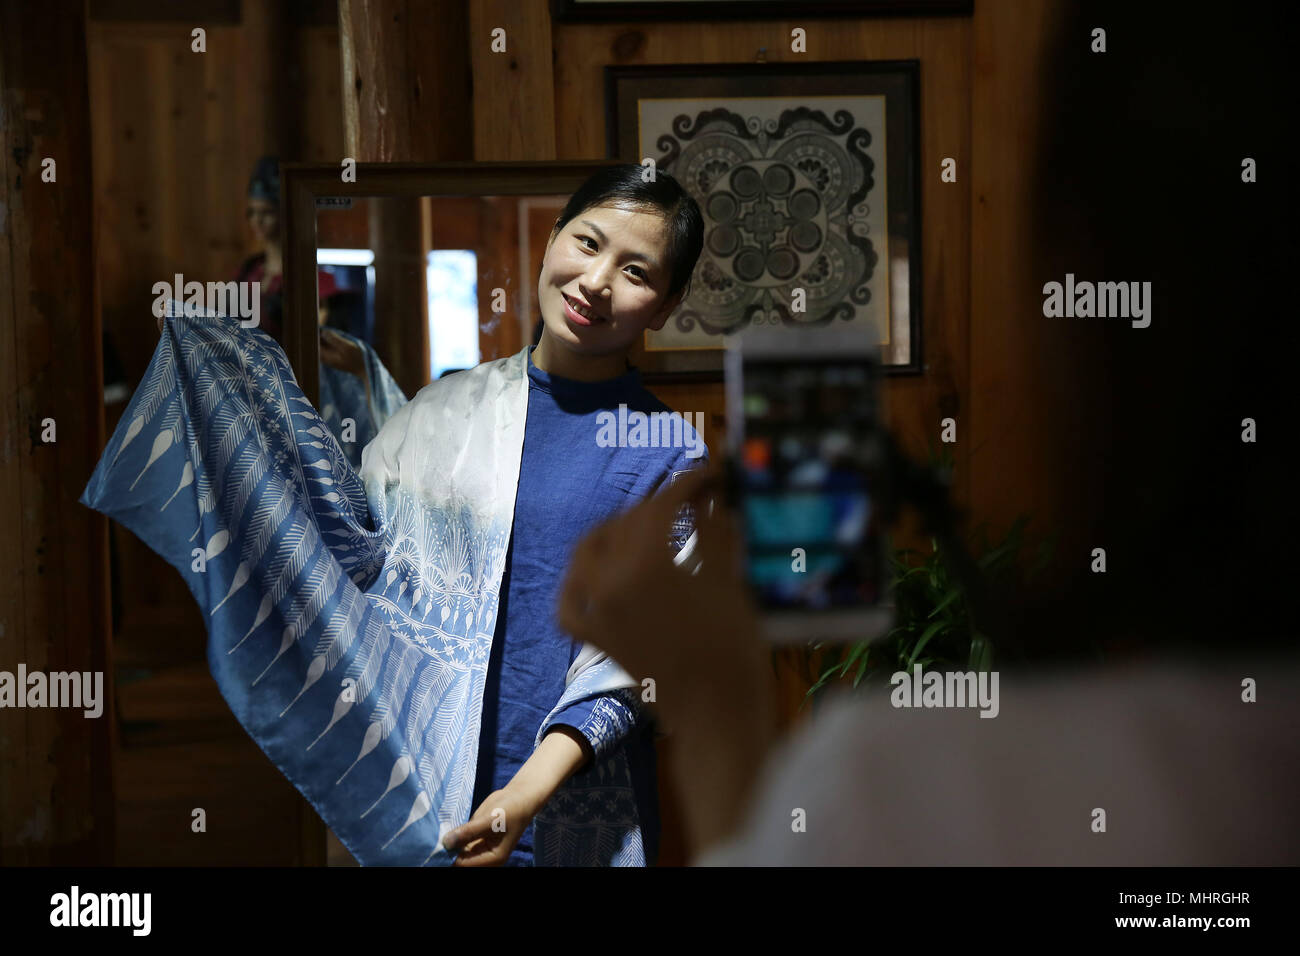 Danzhai, province du Guizhou en Chine. 2 mai, 2018. Zhang Yiping fait la promotion de produits par l'intermédiaire de batik la diffusion sur le réseau mobile à Danzhai, comté de la province du Guizhou, au sud-ouest de la Chine, le 2 mai 2018. Obsédé par la culture batik depuis un enfant, Zhang Yiping, une jeune femme née en 1993, a créé sa propre entreprise de créations de batik à sa ville natale de Danzhai en 2014. Grâce à plusieurs années de développement, Zhang a mis en place sa boutique batik et également une base de production fait-main où plus de 100 femmes ont été employées. Credit : Huang Xiaohai/Xinhua/Alamy Live News Banque D'Images